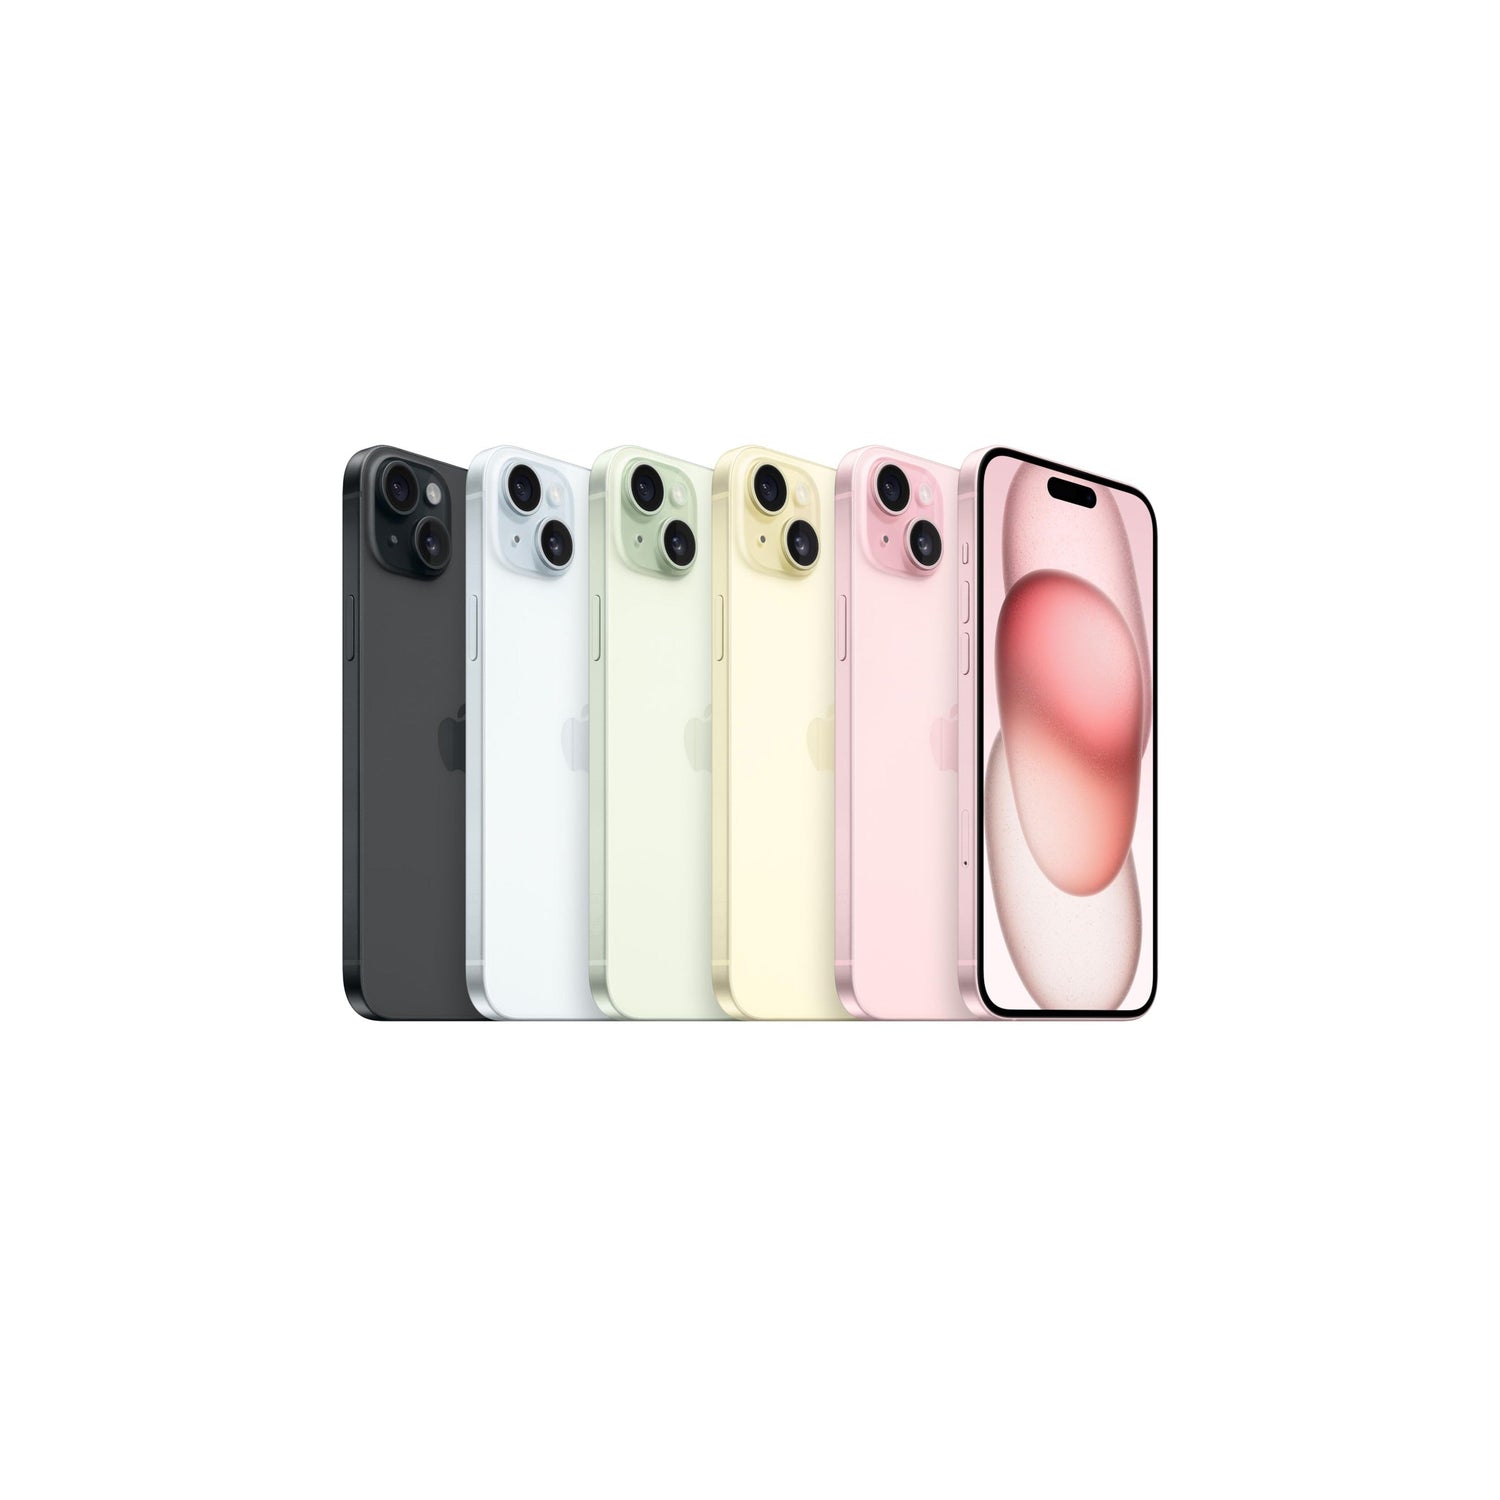 Apple iPhone 15 Plus (256 GB) - Rosa-iStoreMilano